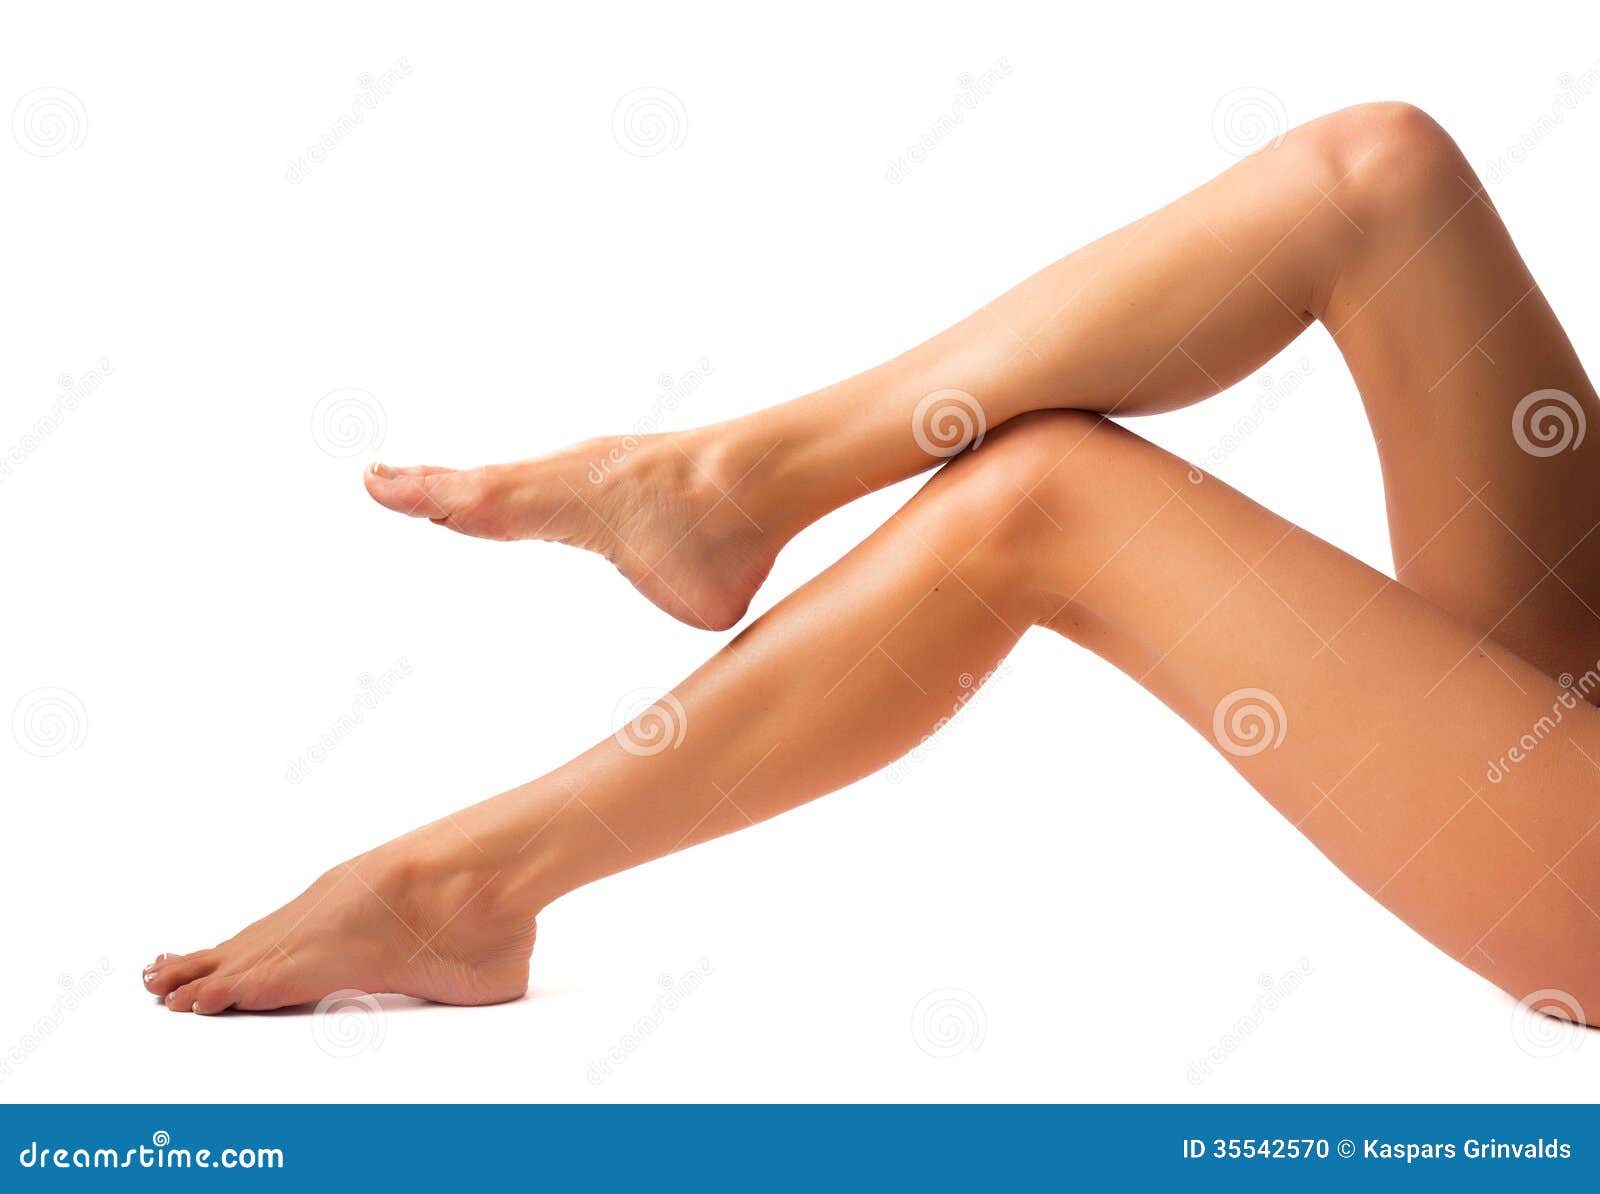 Ноги Женщин Фото